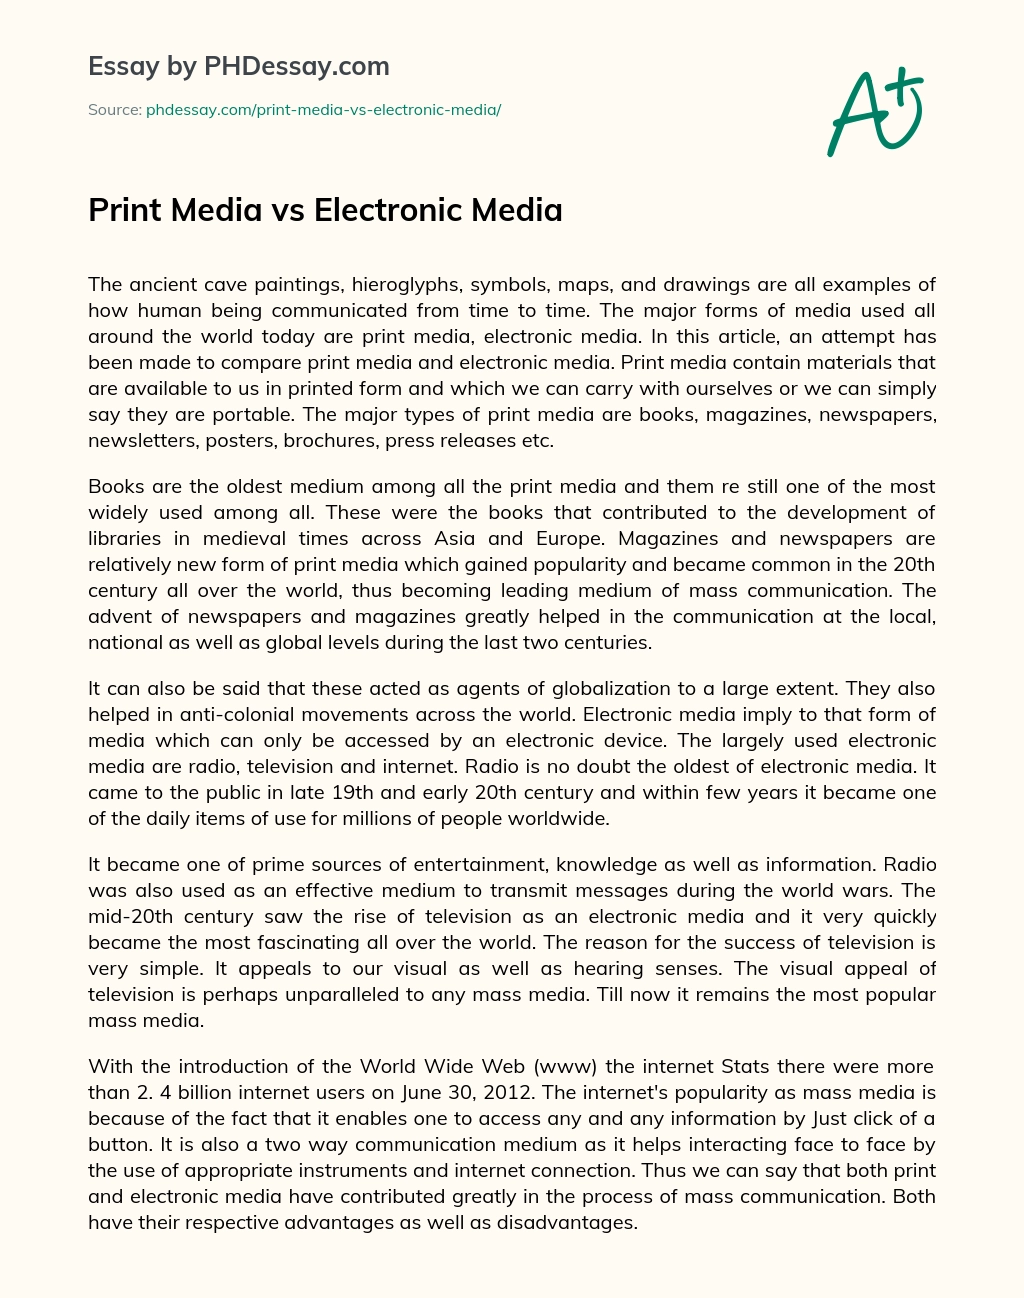 Print Media vs Electronic Media essay